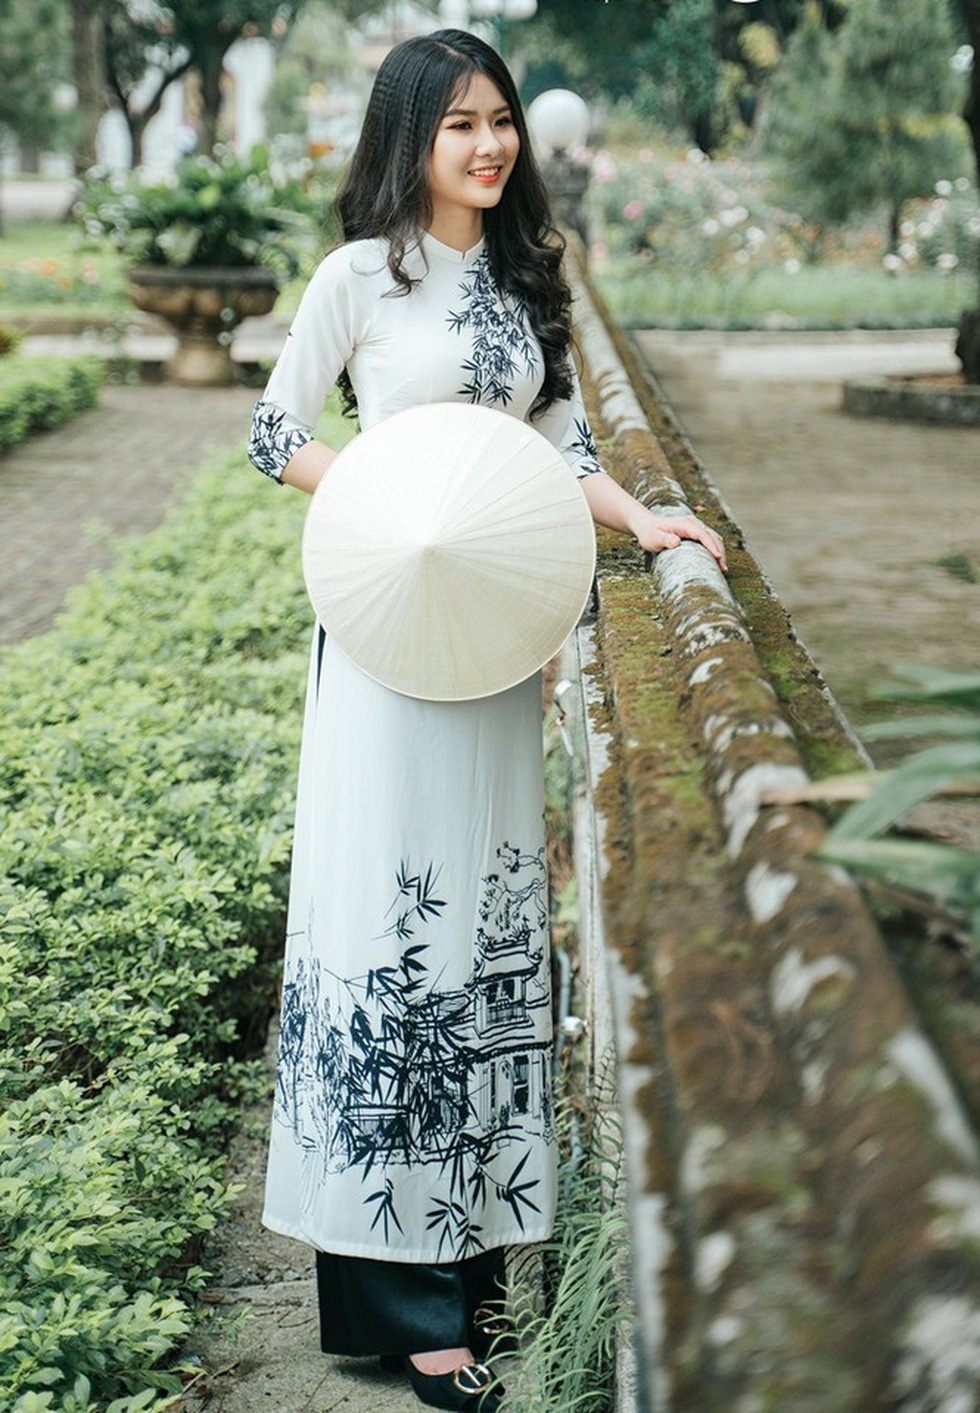 Hoa hậu Việt Nam 2020: Làn gió mạnh mẽ đến từ các người đẹp thế hệ 2000